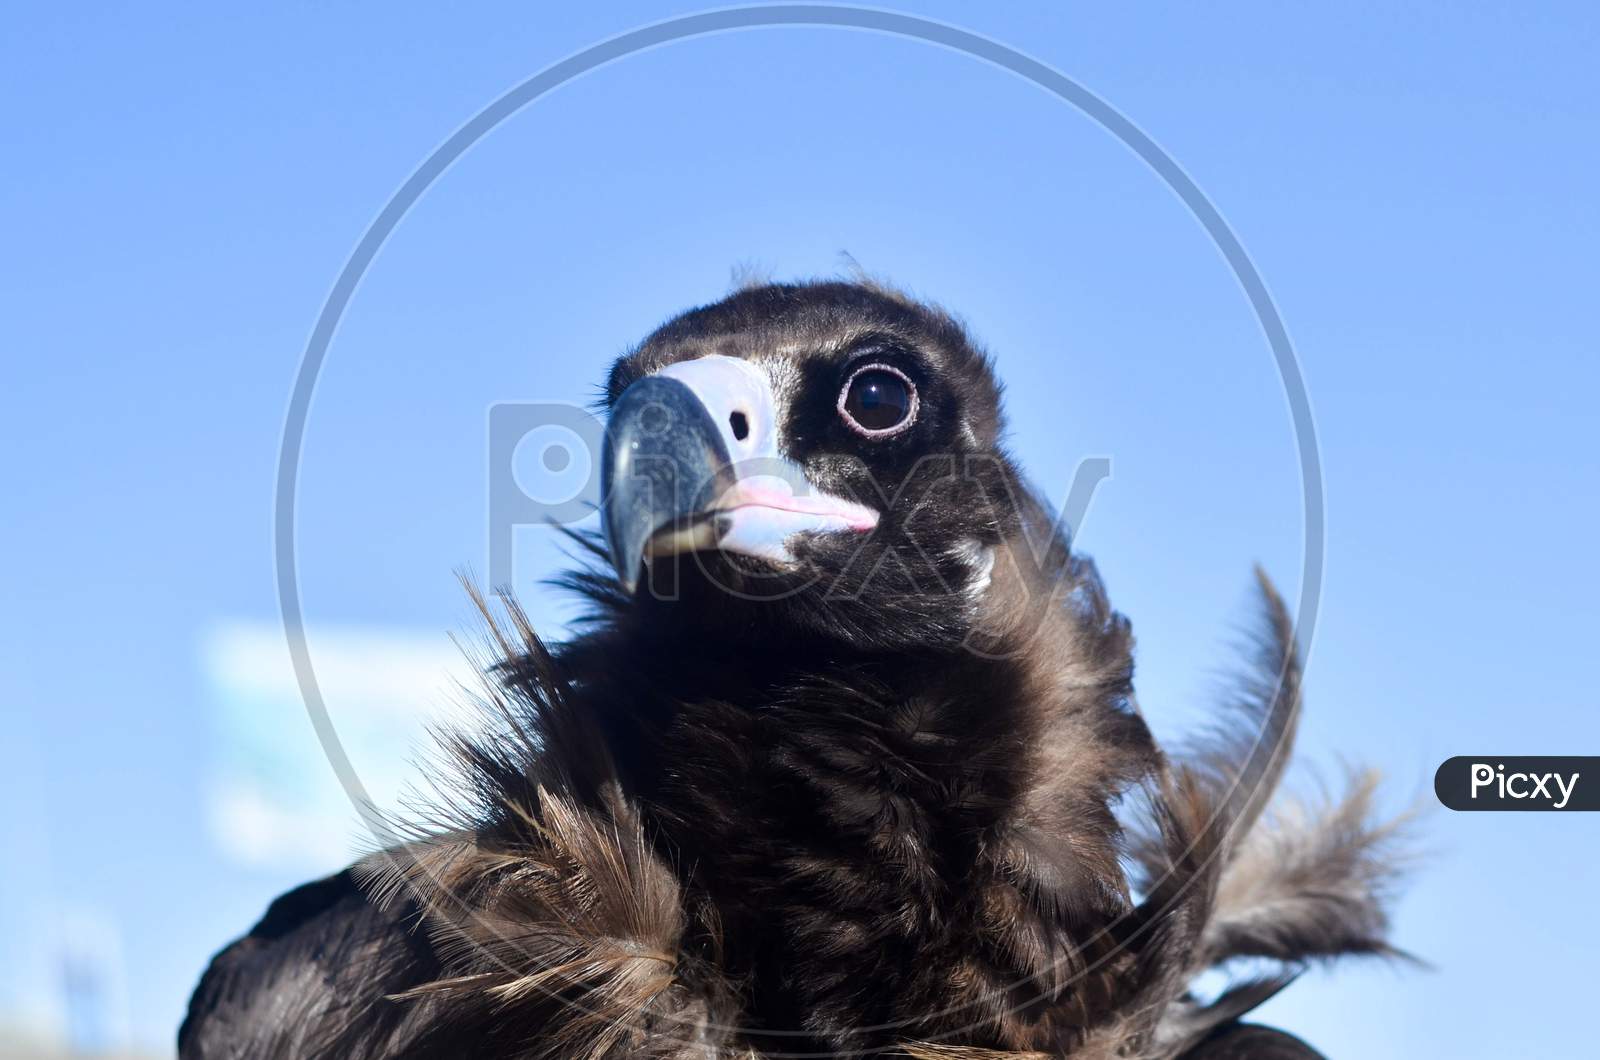 Mongolian eagle